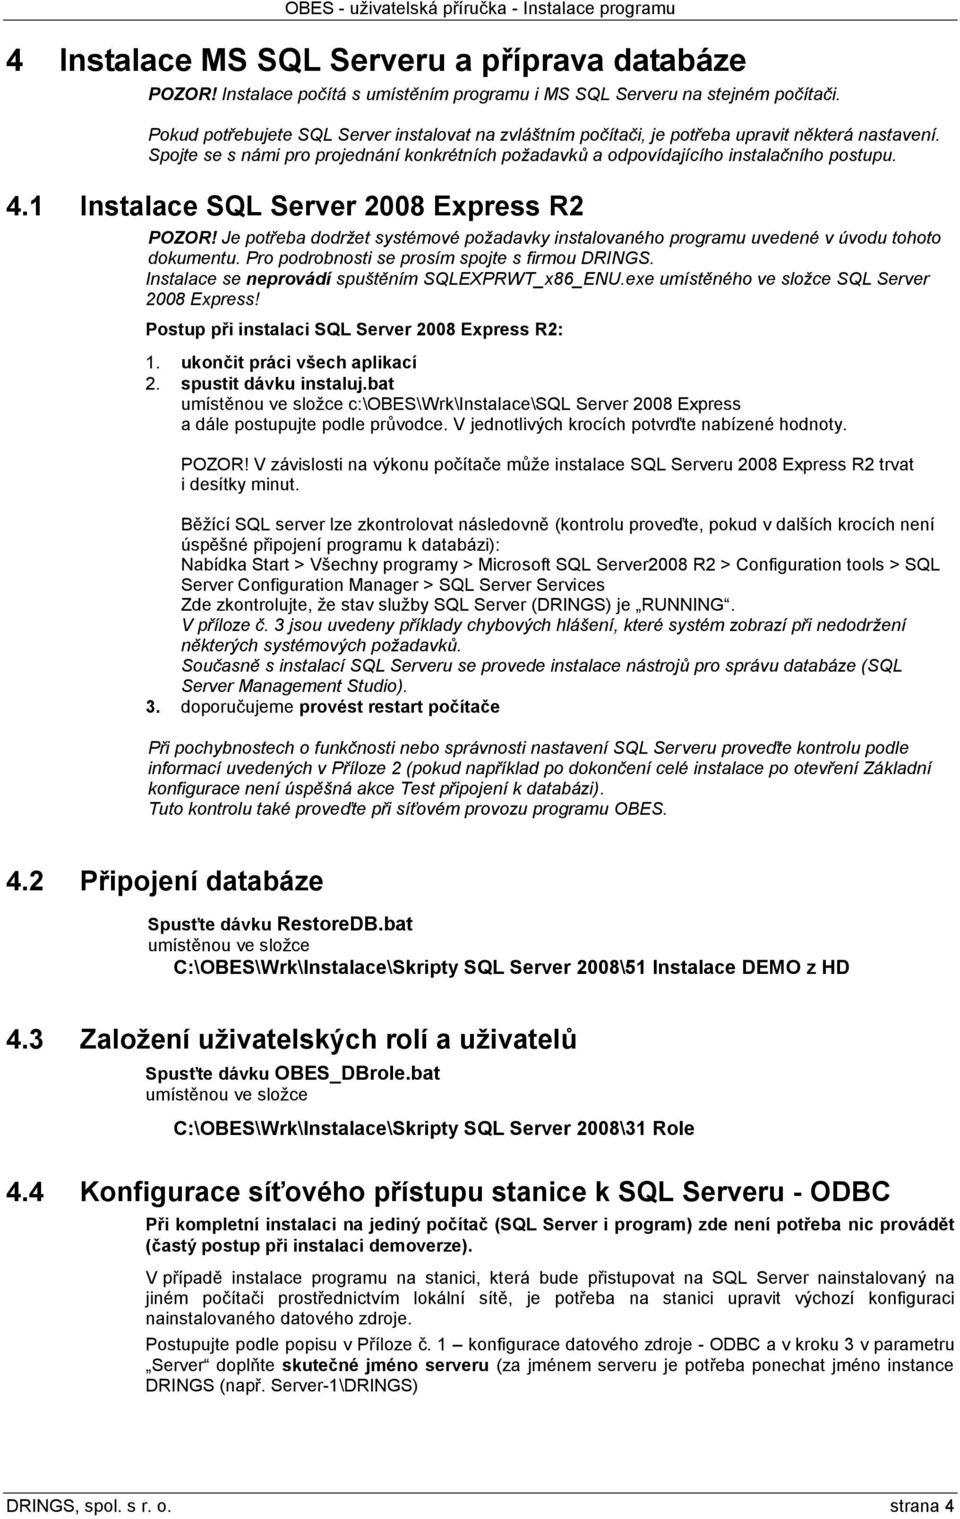 1 Instalace SQL Server 2008 Express R2 POZOR! Je potřeba dodržet systémové požadavky instalovaného programu uvedené v úvodu tohoto dokumentu. Pro podrobnosti se prosím spojte s firmou DRINGS.